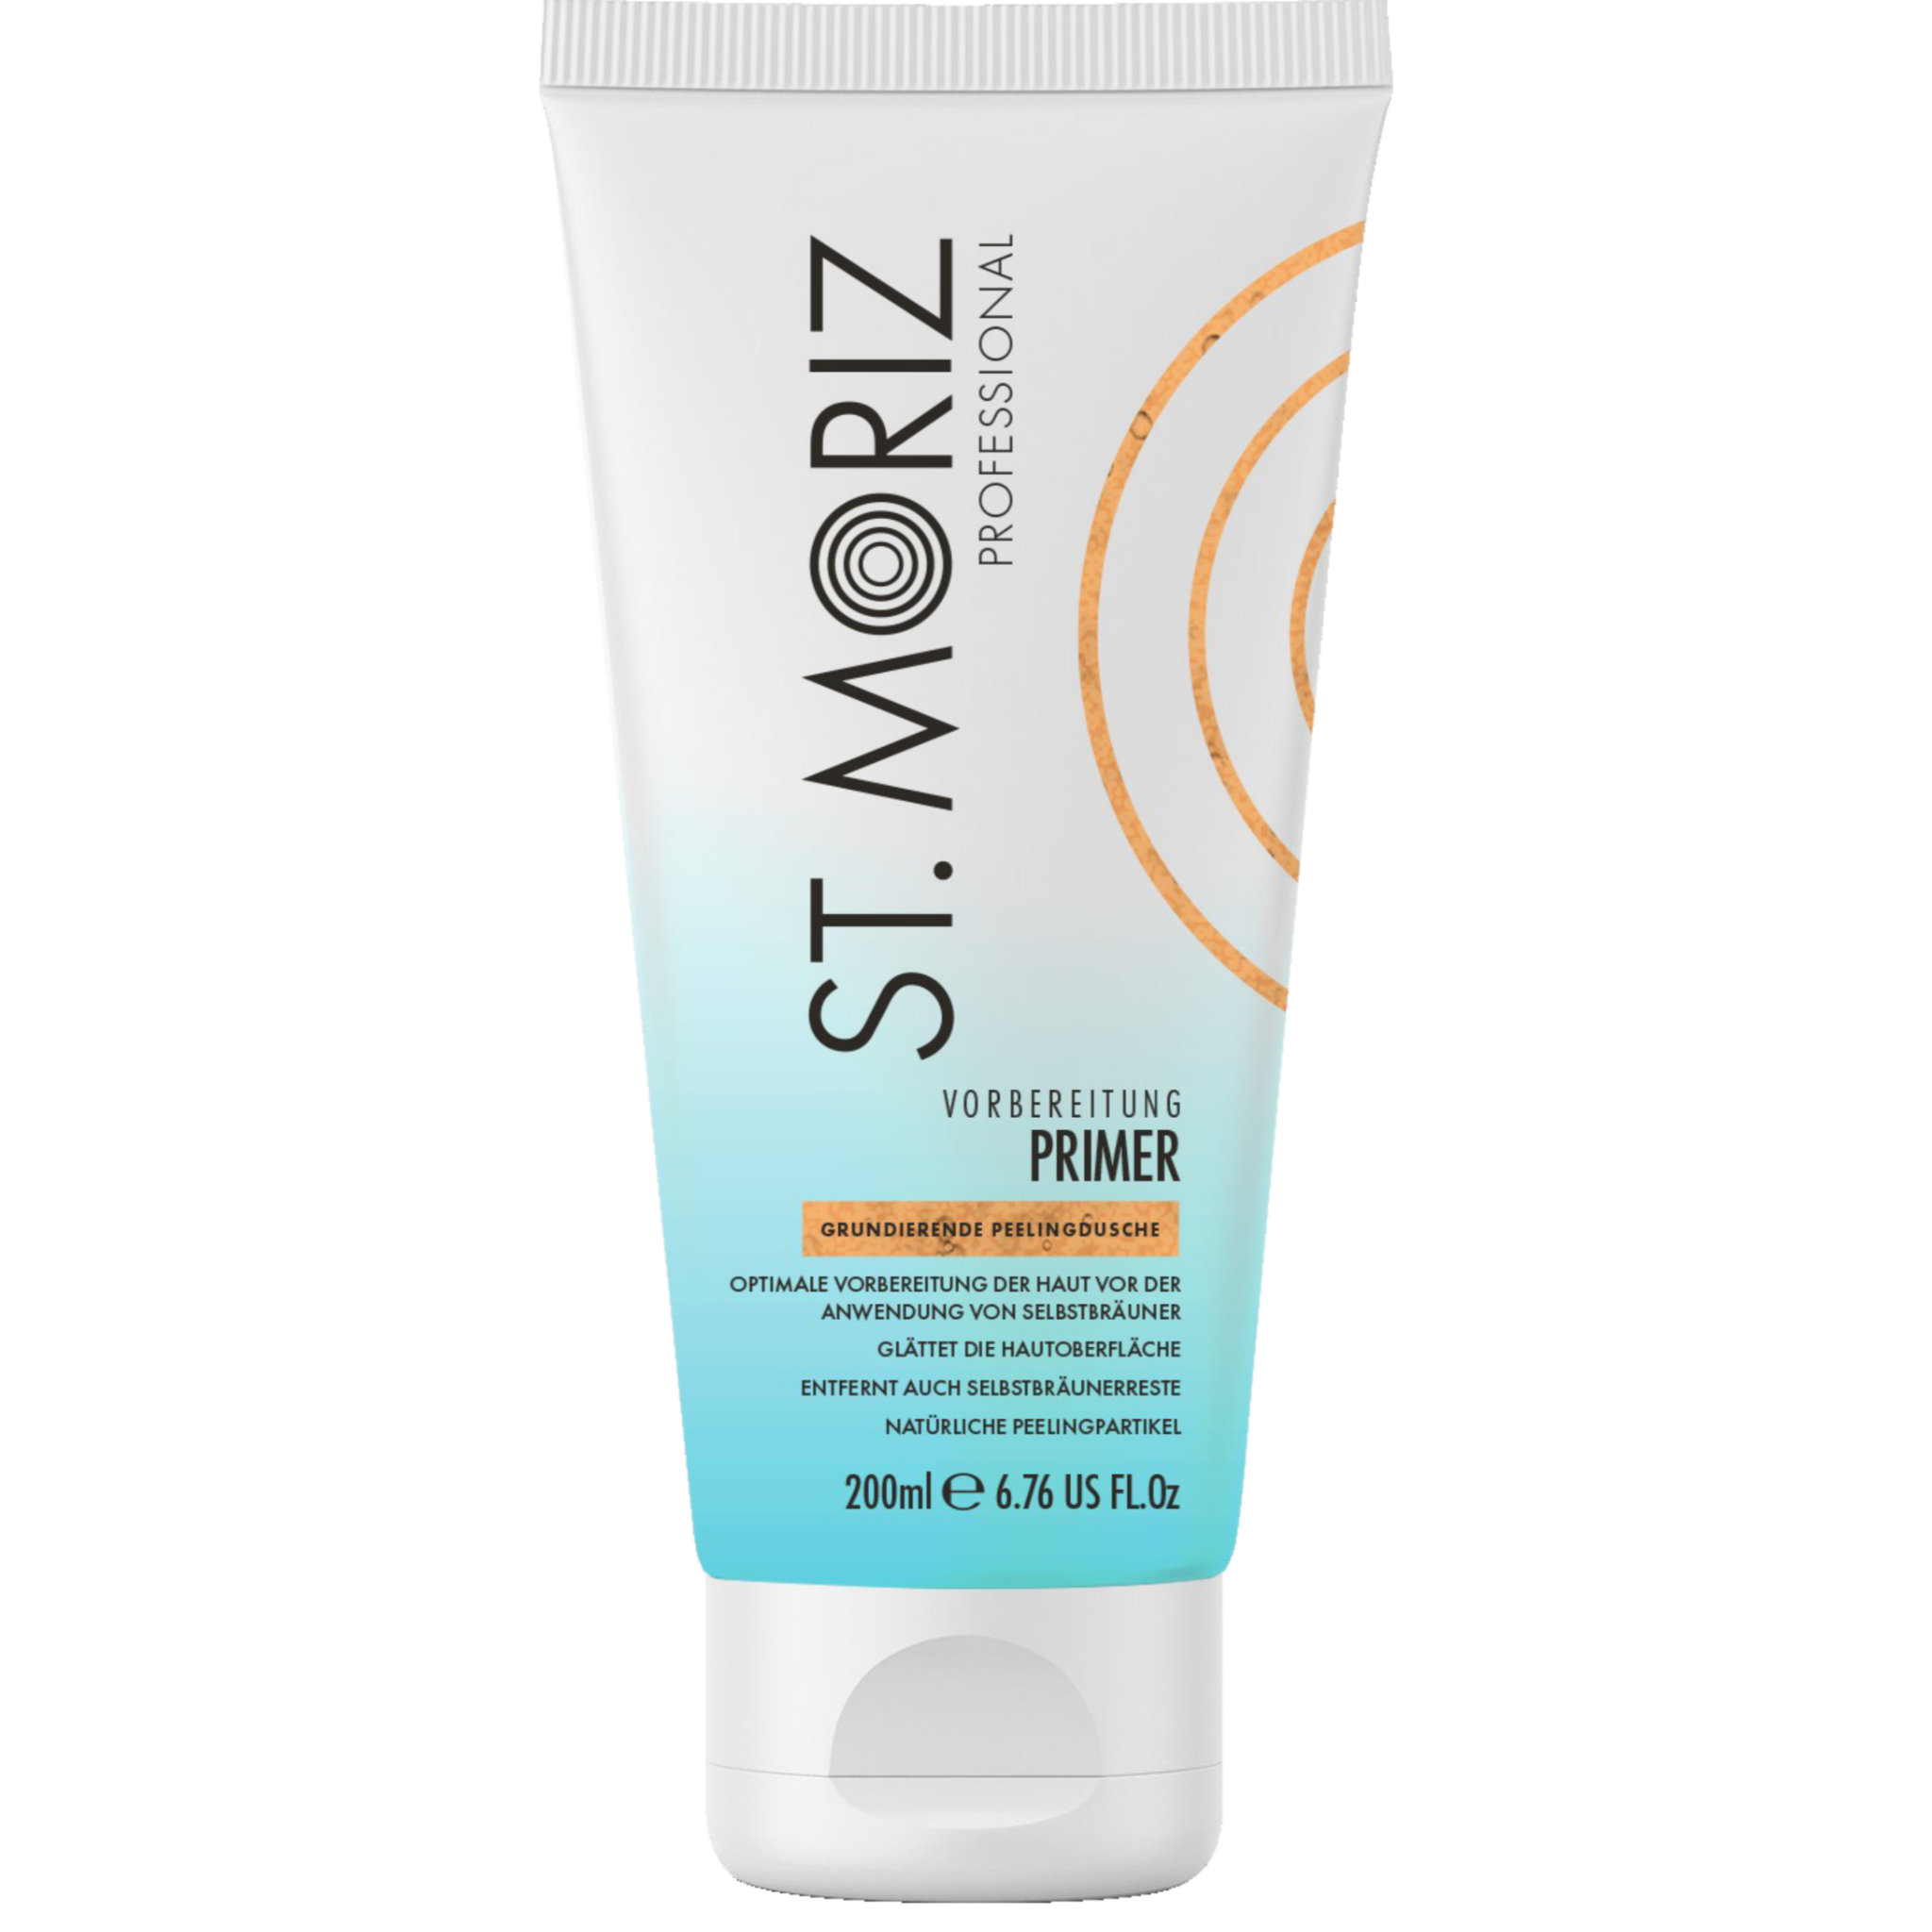 St. Moriz Professional - Skin Primer - Grundierende Peelingdusche 200ml